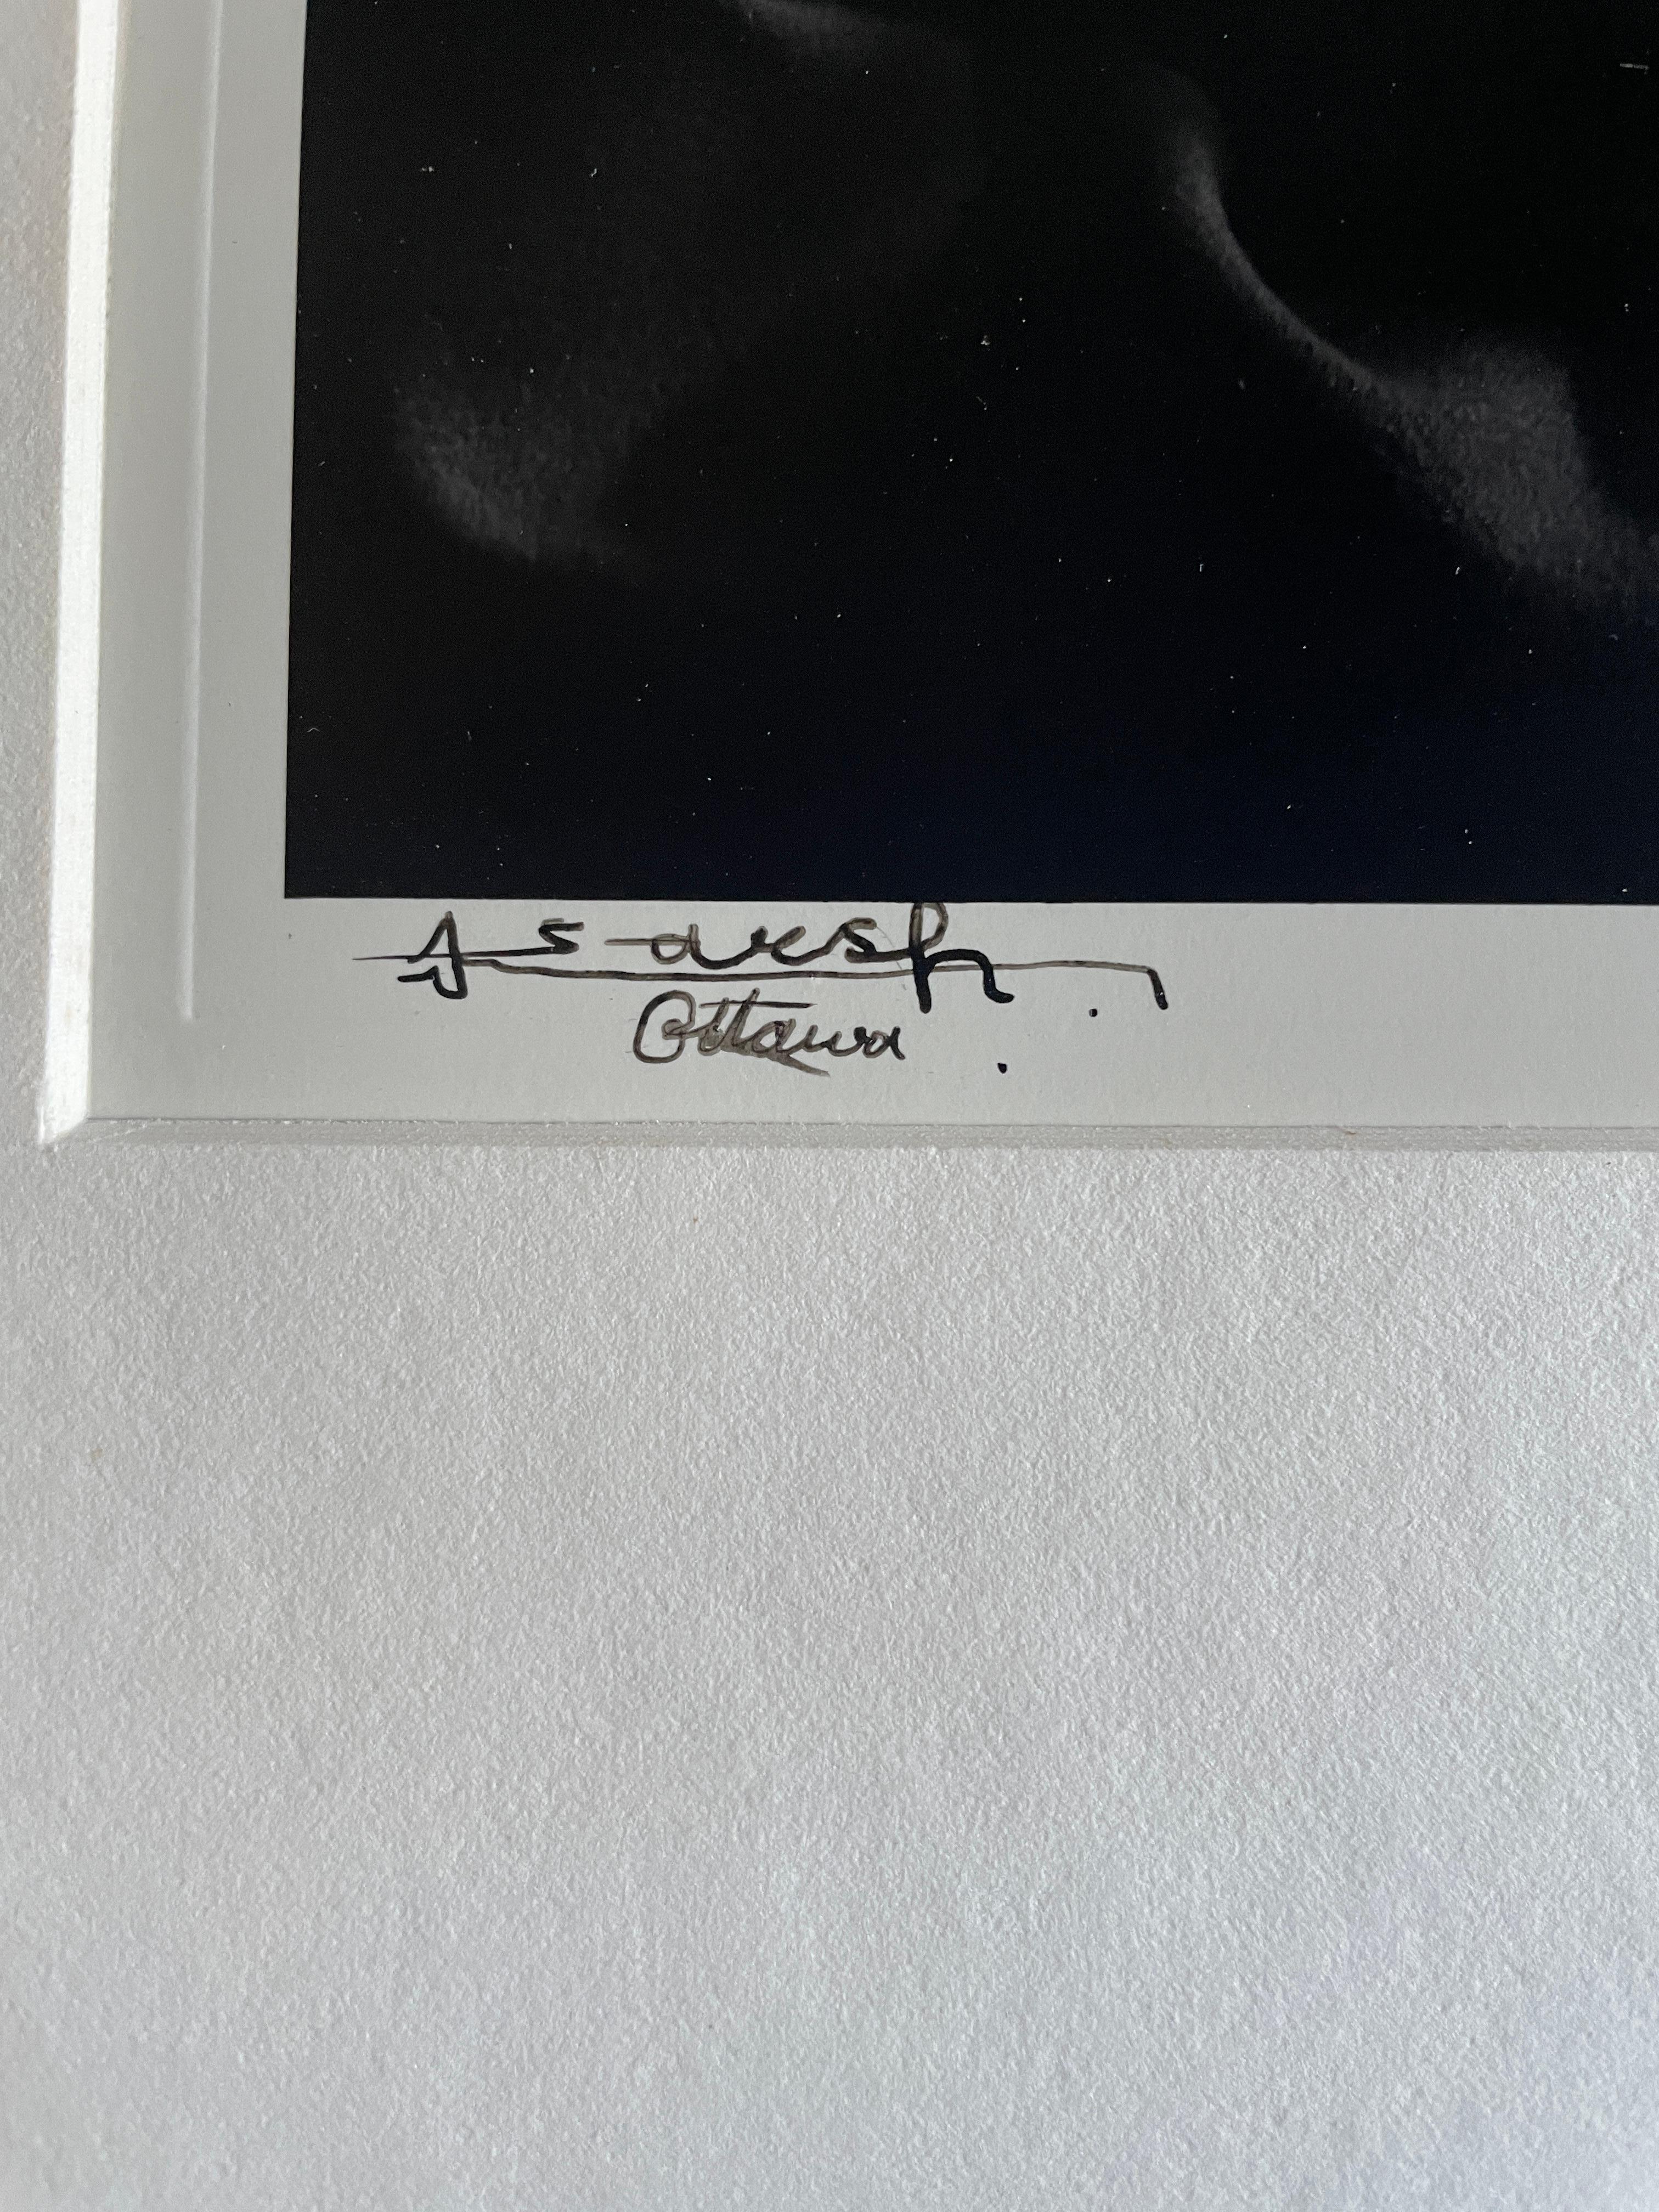 Albert Einstein (Schwarz), Black and White Photograph, von Yousuf Karsh